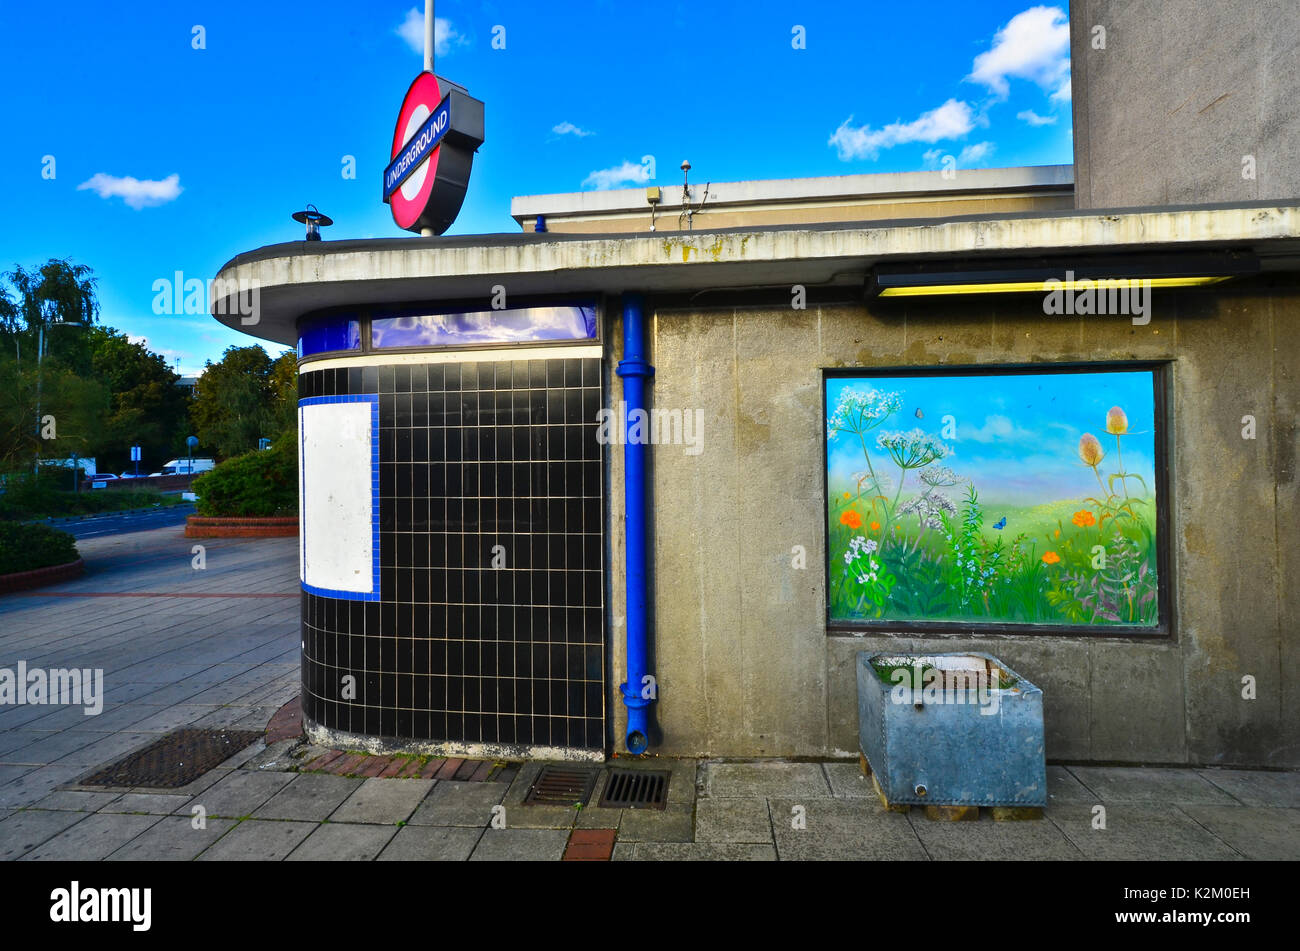 La station de métro Central line Wanstead d'une murale de campagne sur le mur. Un vieux réservoir d'eau est utilisée comme un semoir. Banque D'Images